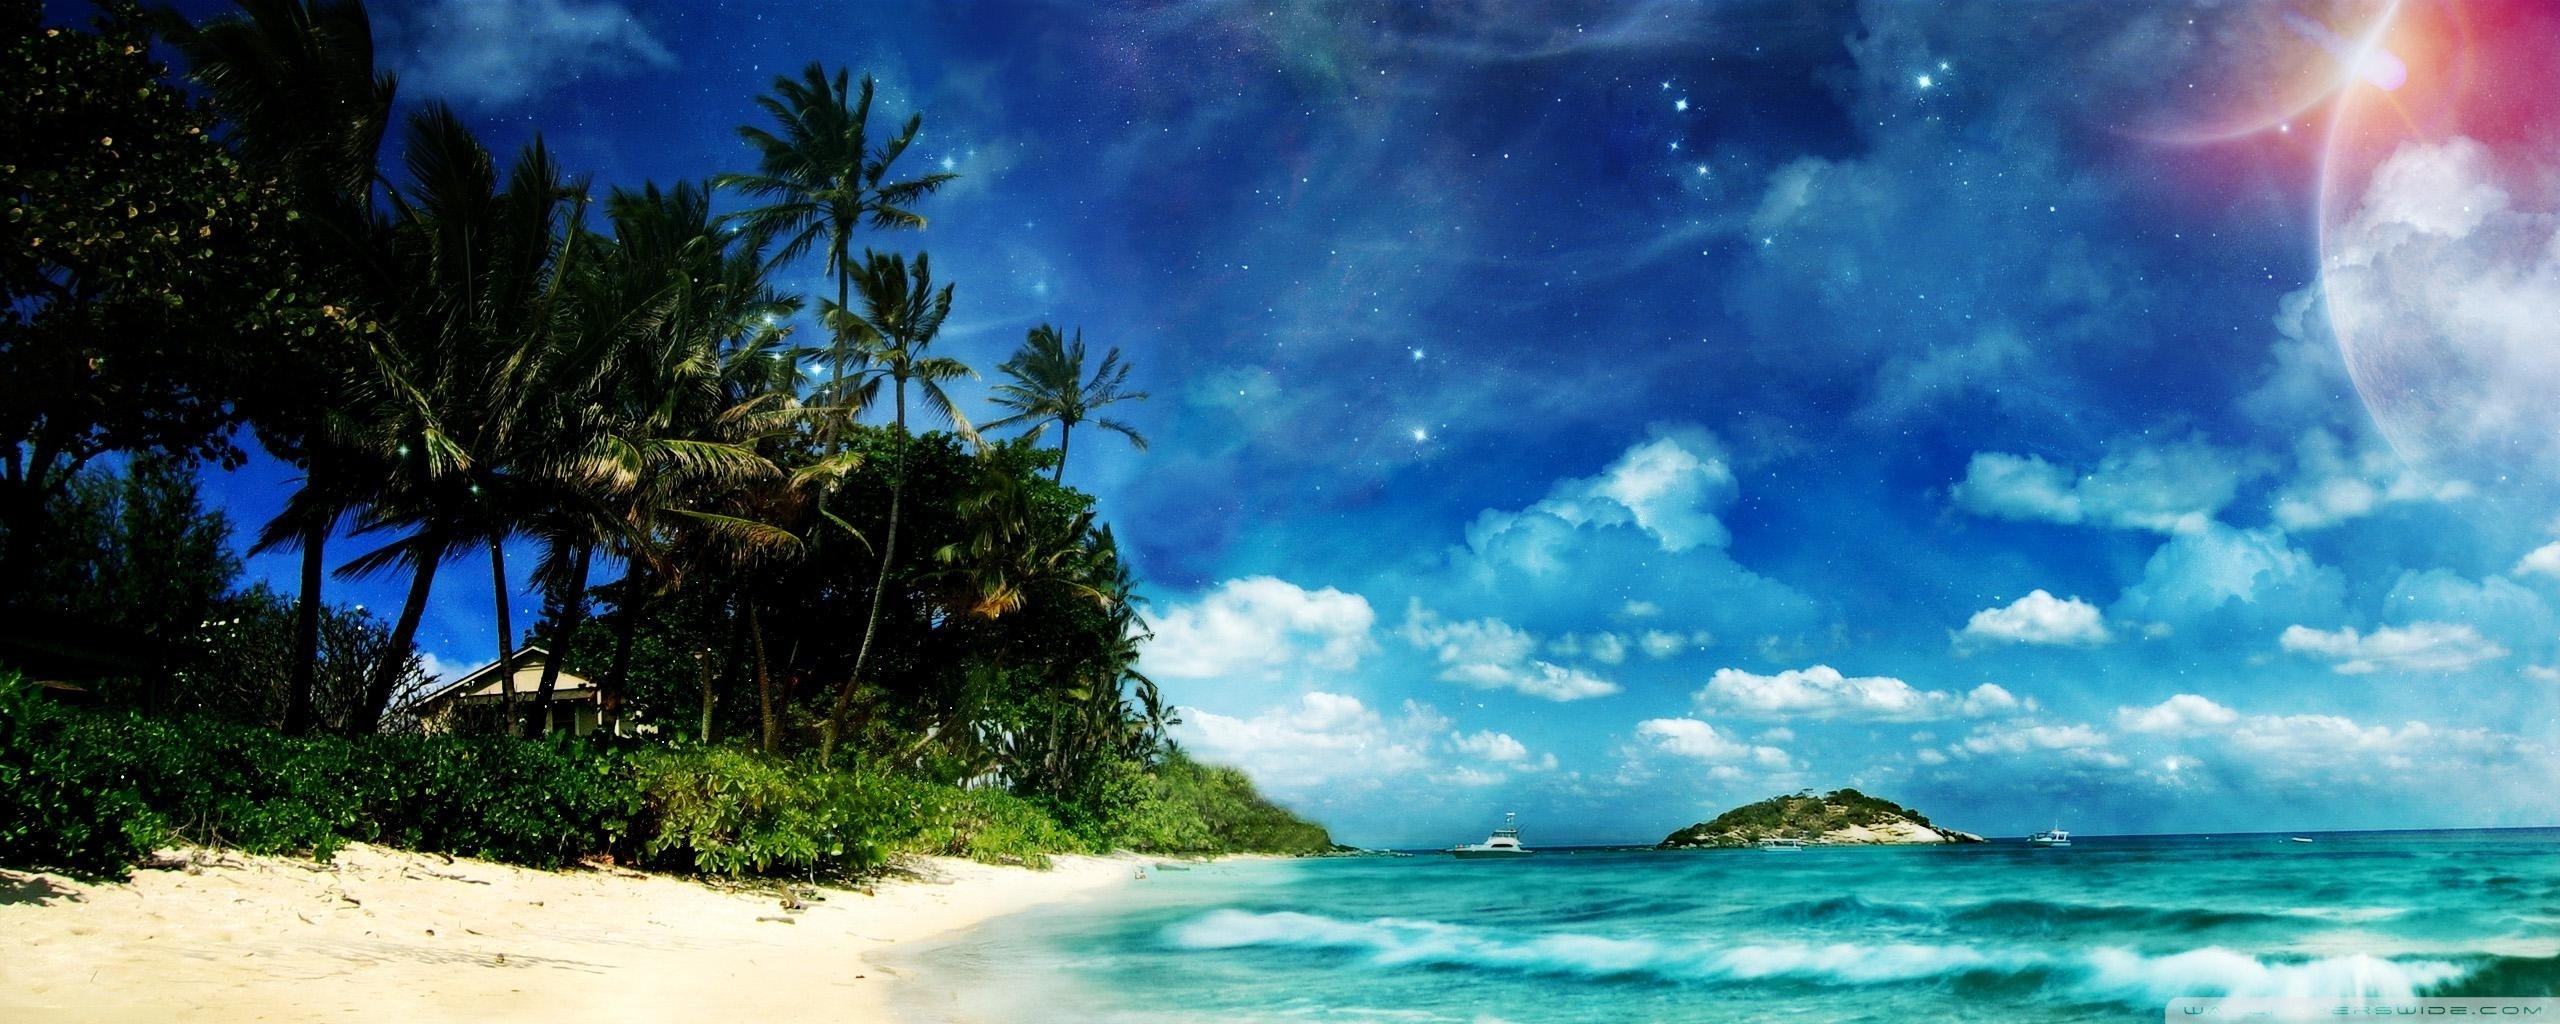 Surreal Beach Ultra HD Desktop Background Wallpaper